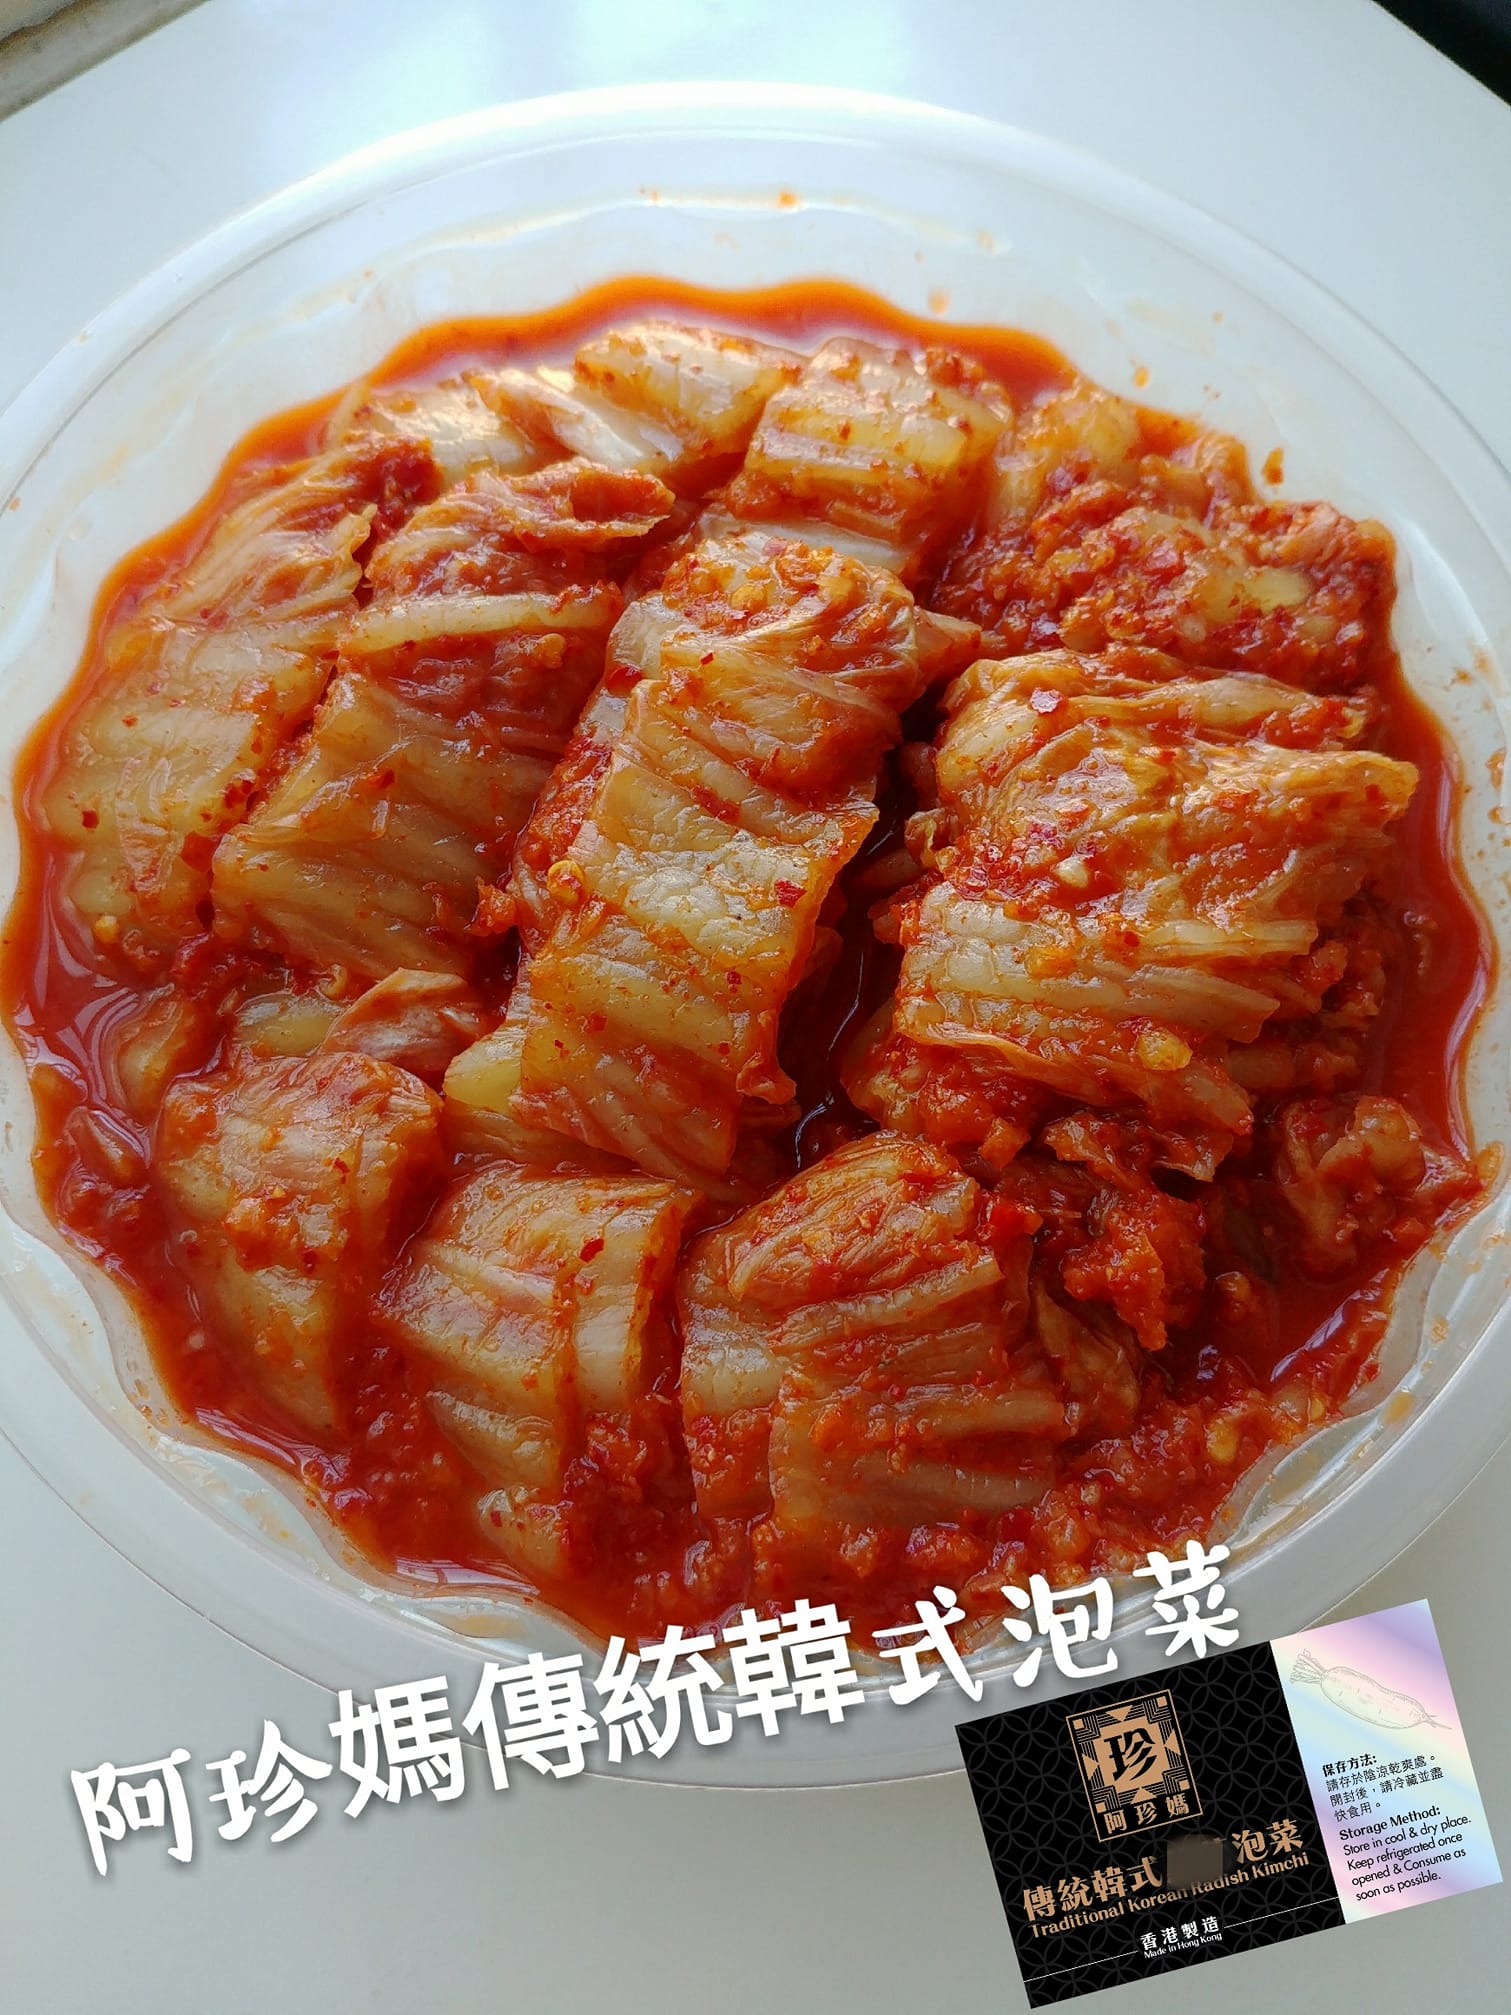 阿珍媽傳統韓式泡菜1KG